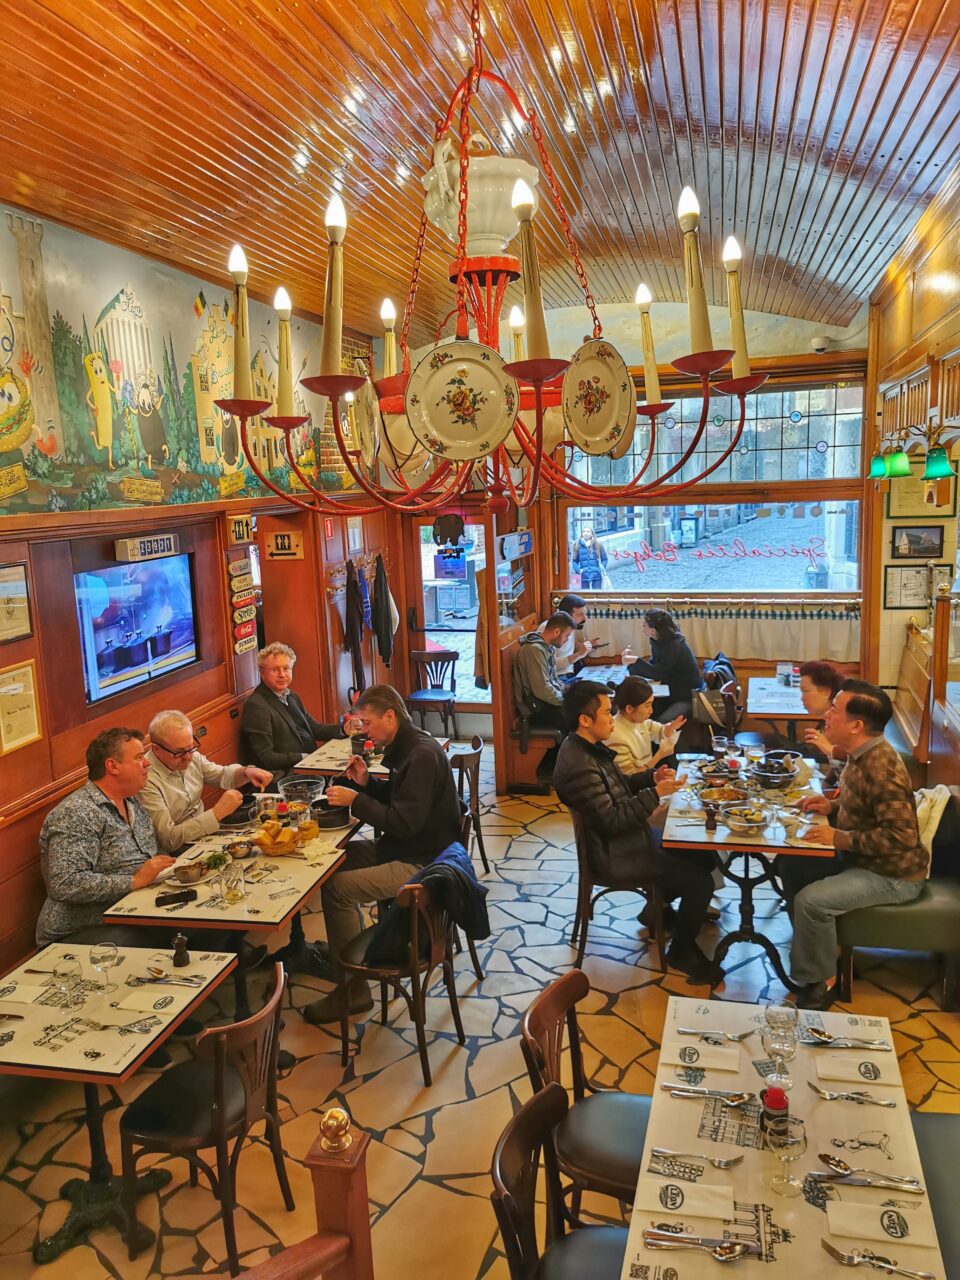 Chez Leon. En restaurant med interiør av tre og rødt. I taket henger en lysekrone med tallerkner til pynt. Foto